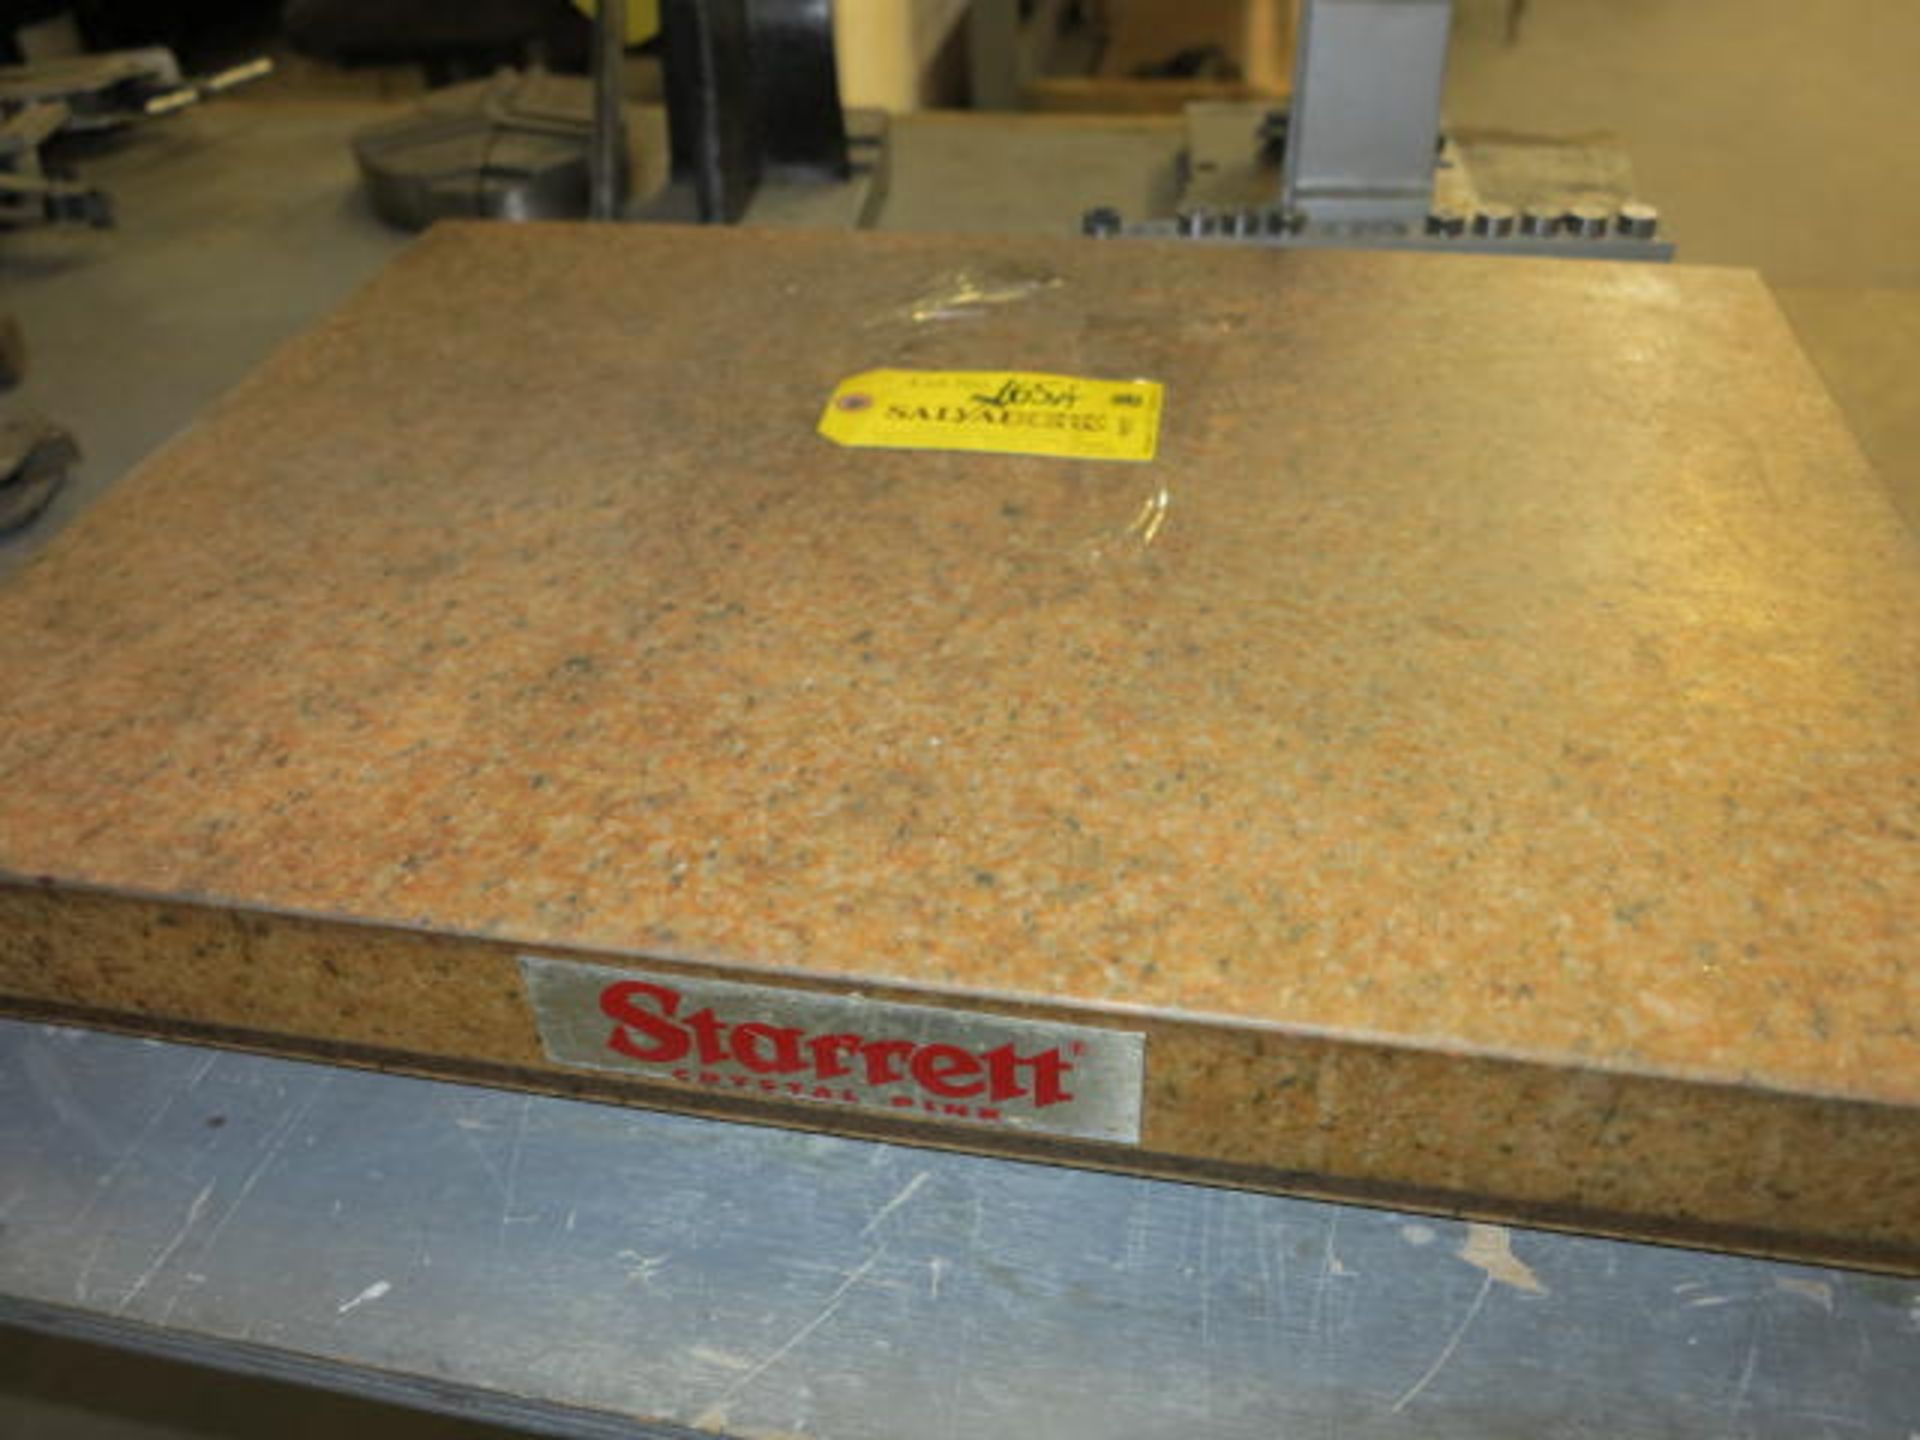 Starrett 18 x 24 Surface Plate Location: Elmco Tool 3 Peter Rd Bristol, RI